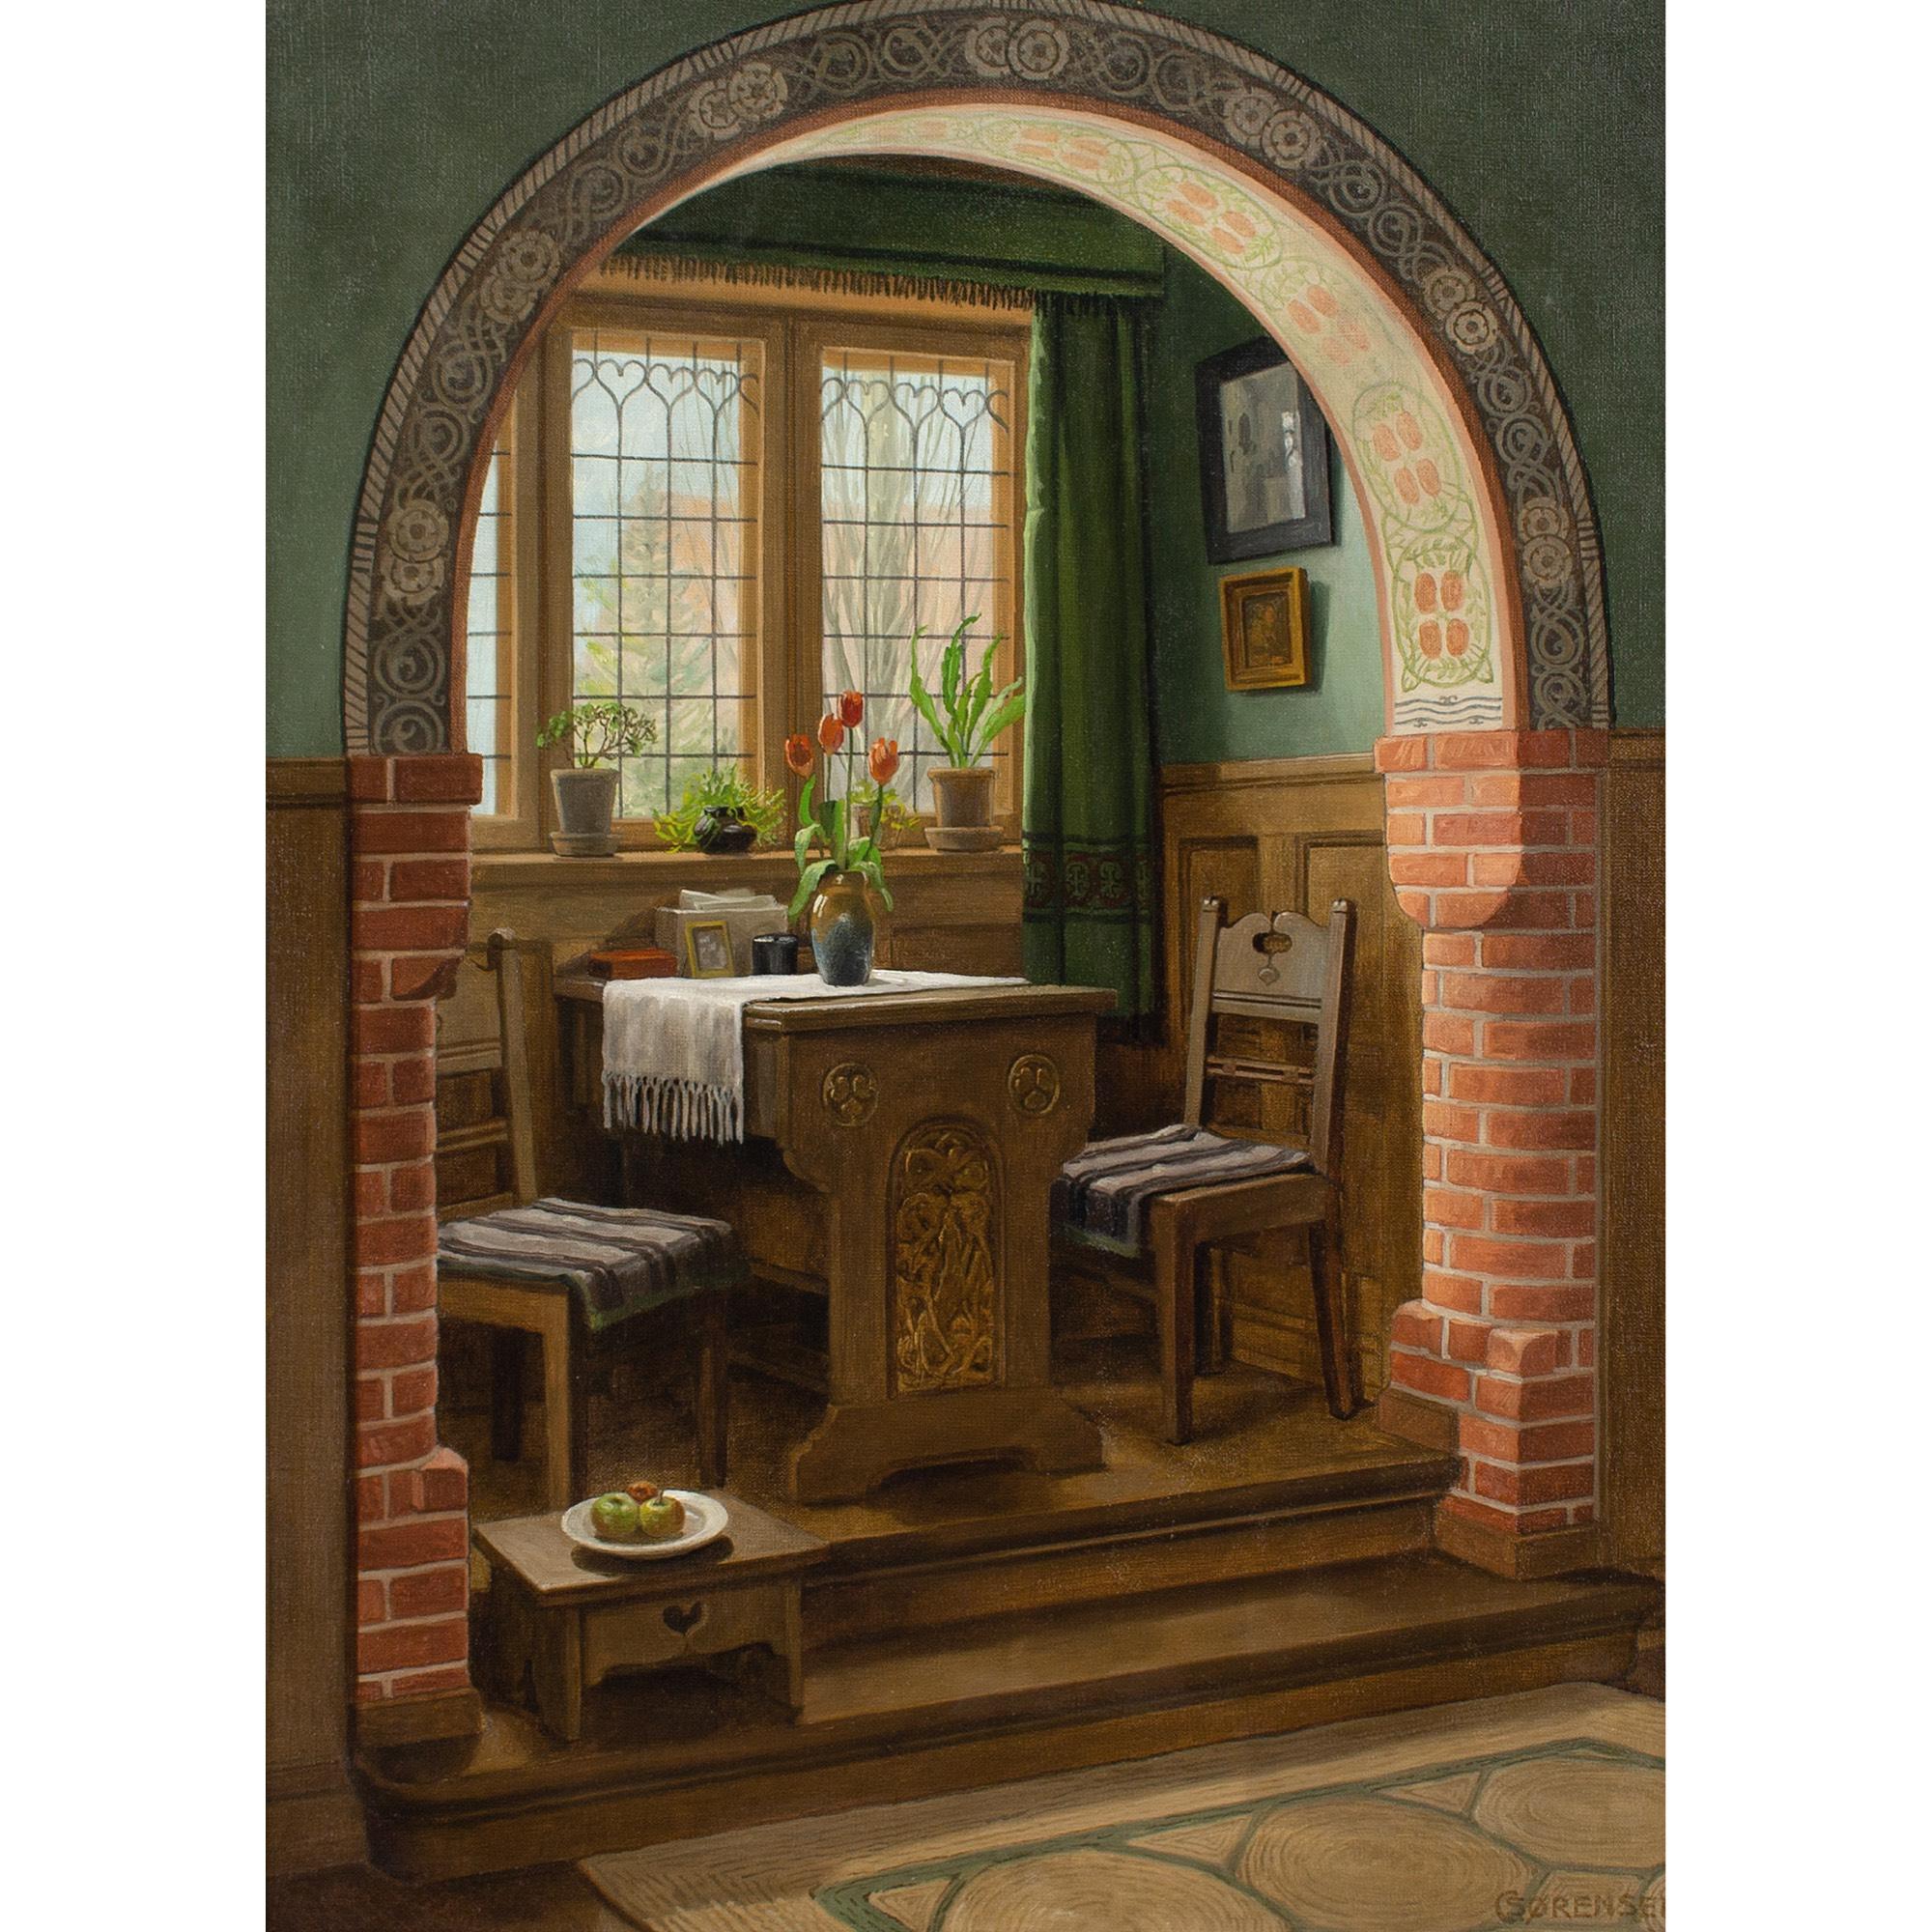 C Sorensen, Interior With Arch & Dining Nook - Painting by C Sørensen